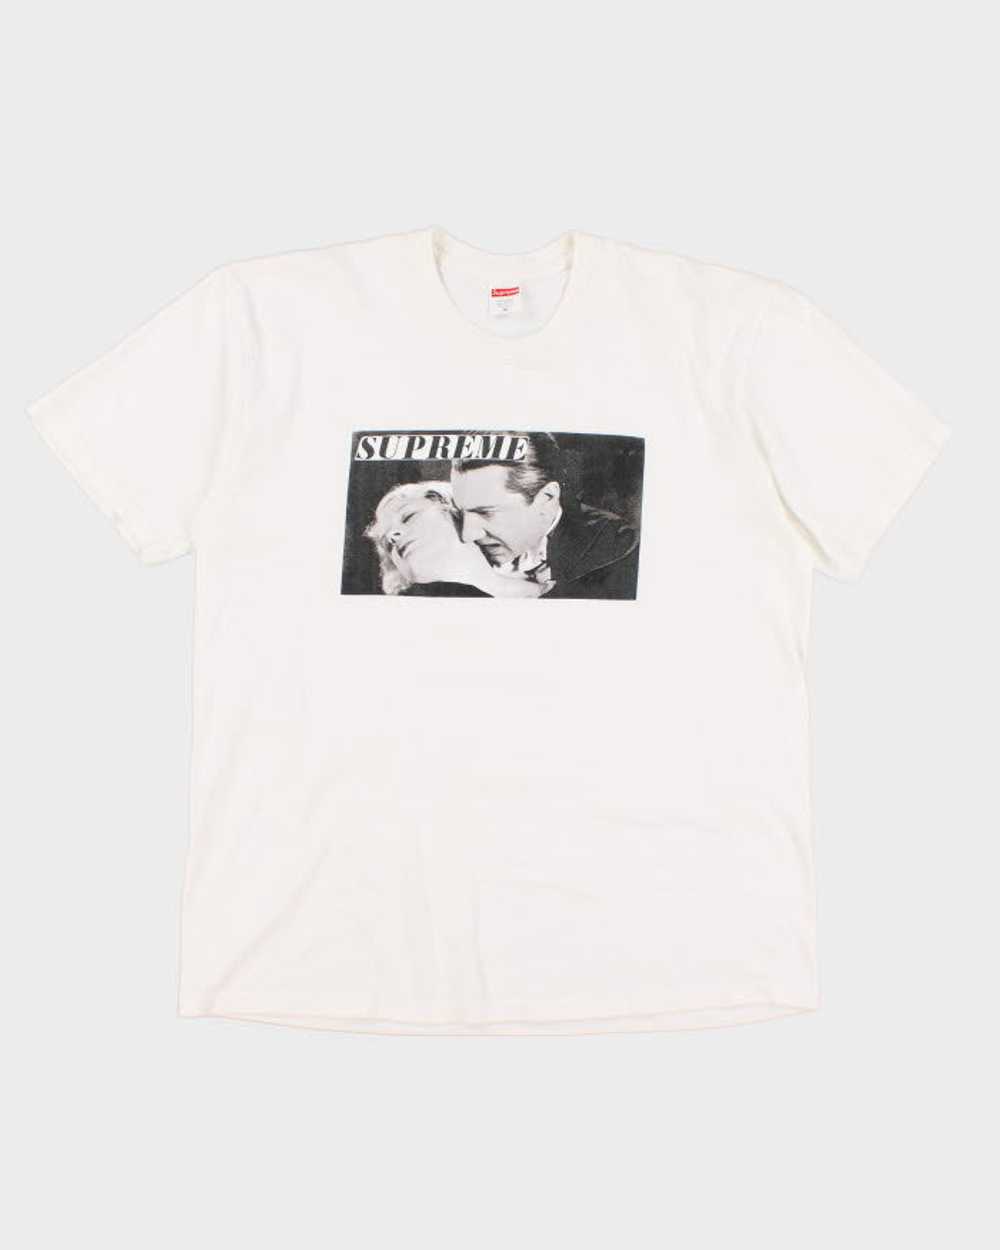 Supreme Bela Lugosi T-Shirt - XL - image 1